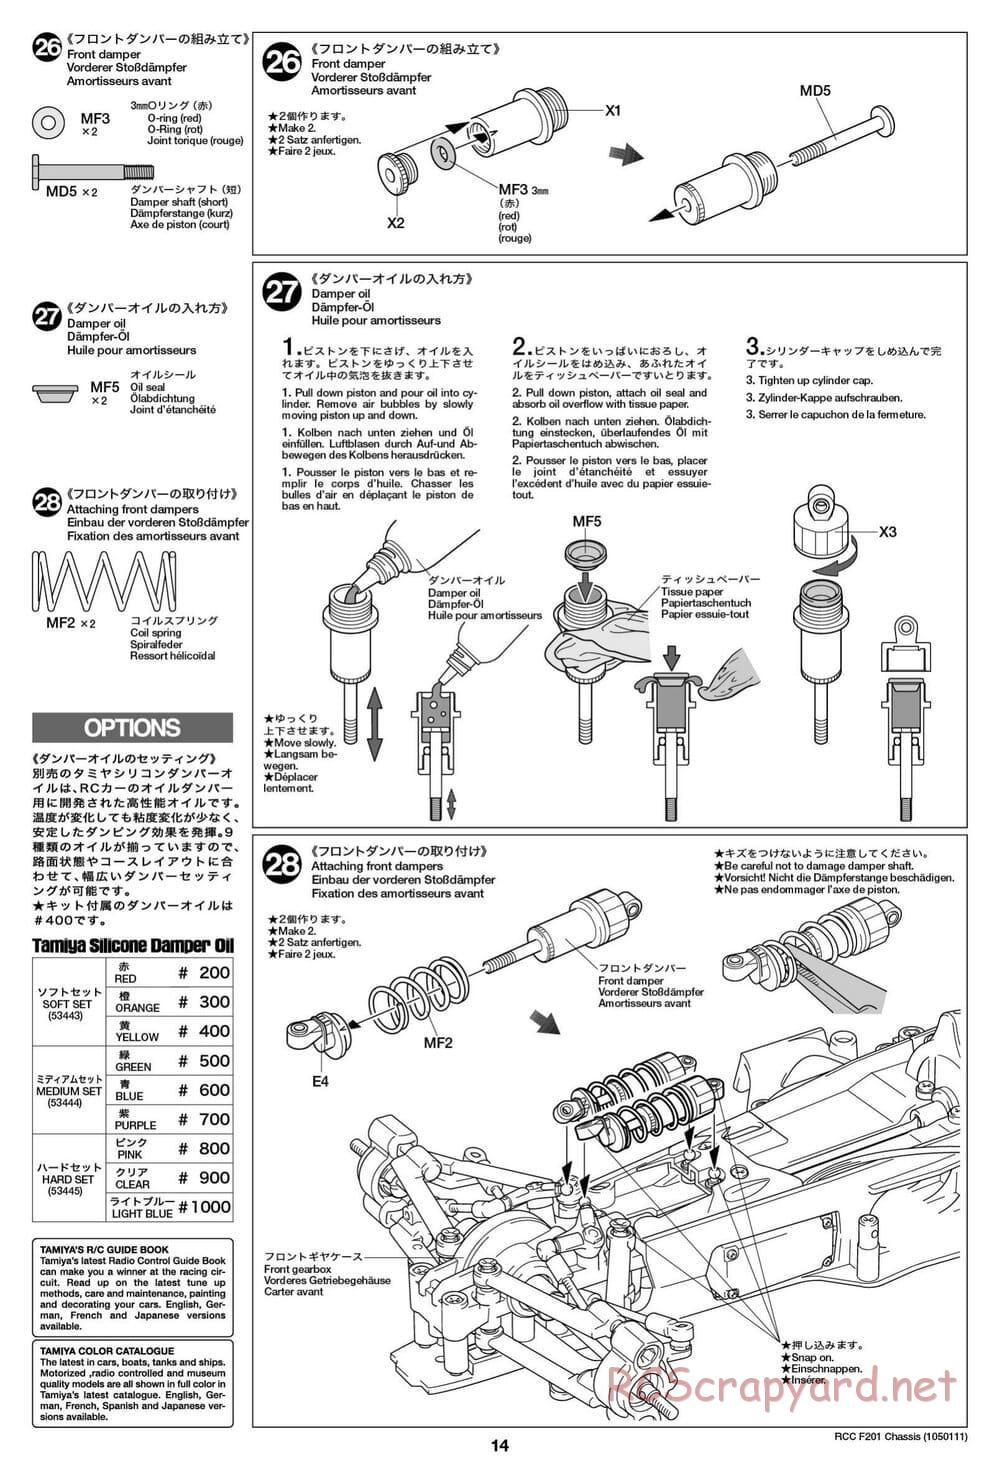 Tamiya - F201 Chassis - Manual - Page 14